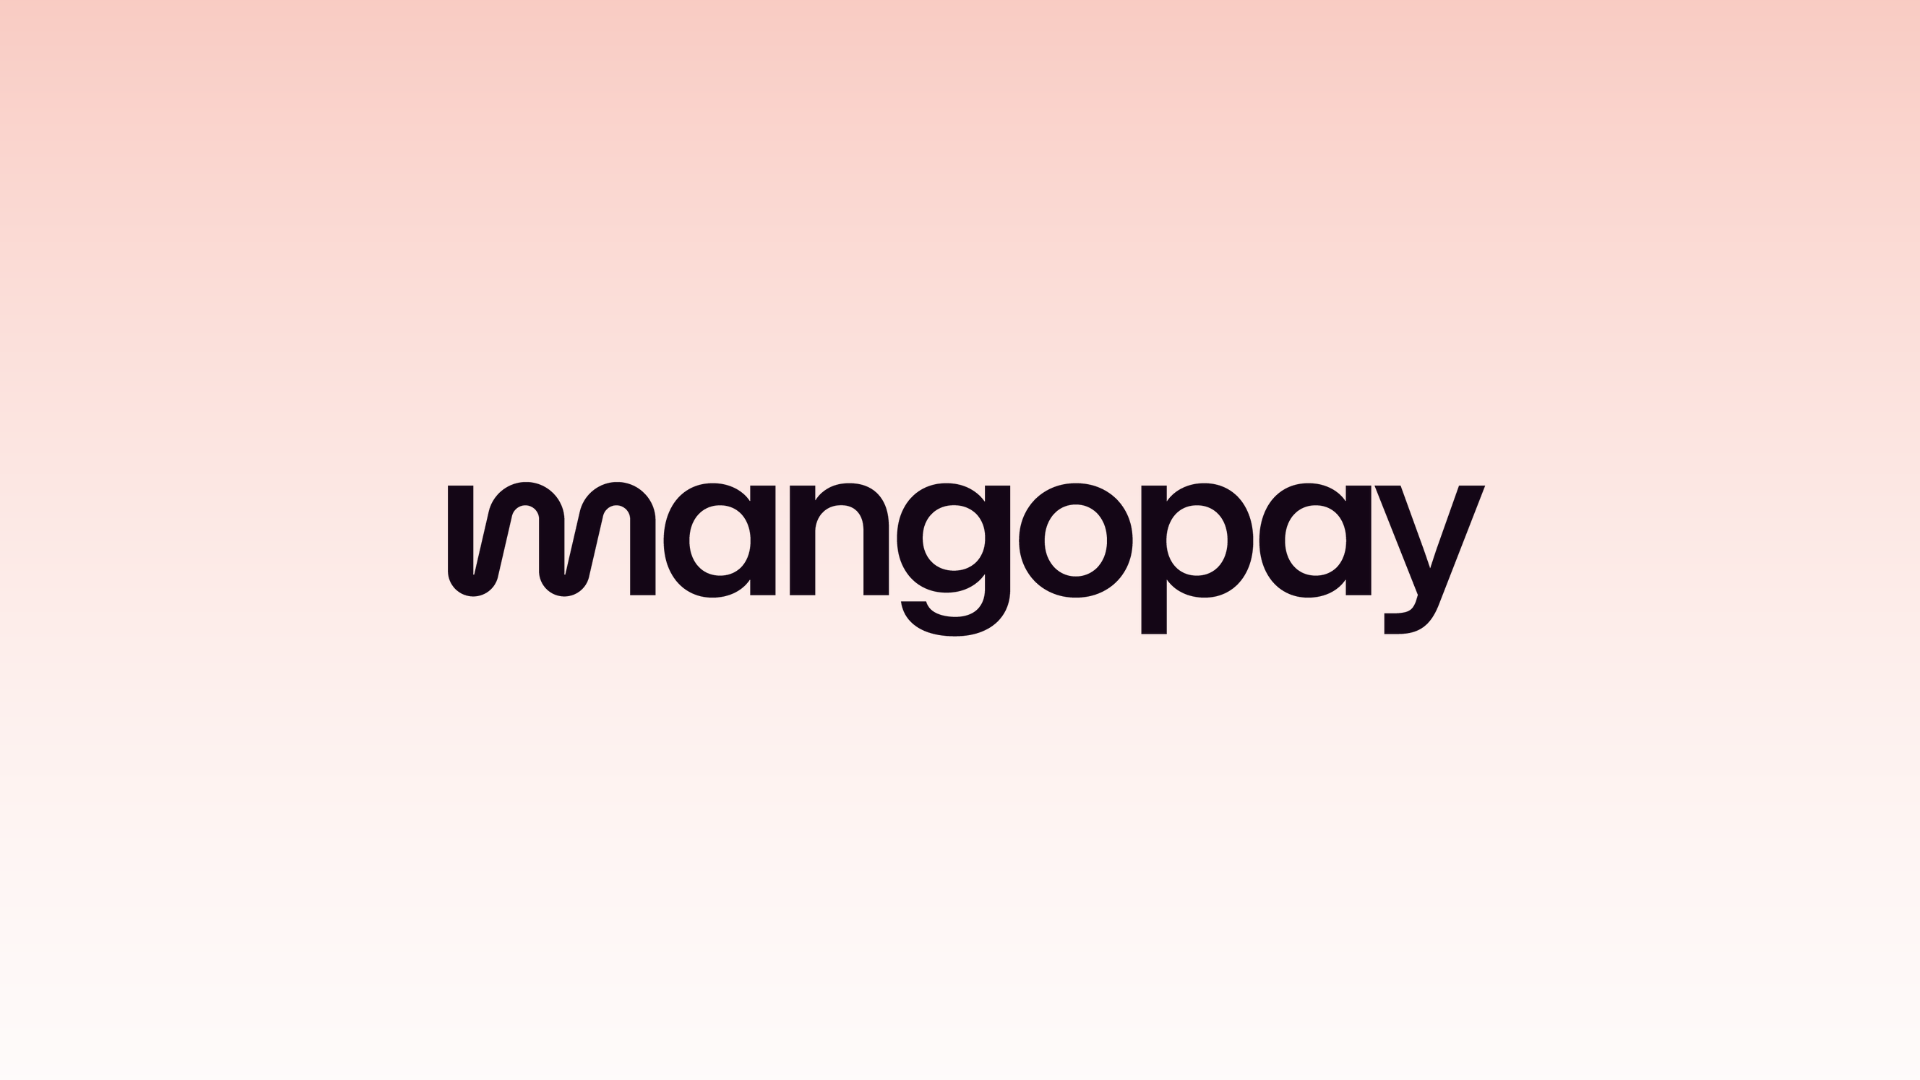 Mangopay dévoile ses prévisions 2024 pour le secteur des fintechs